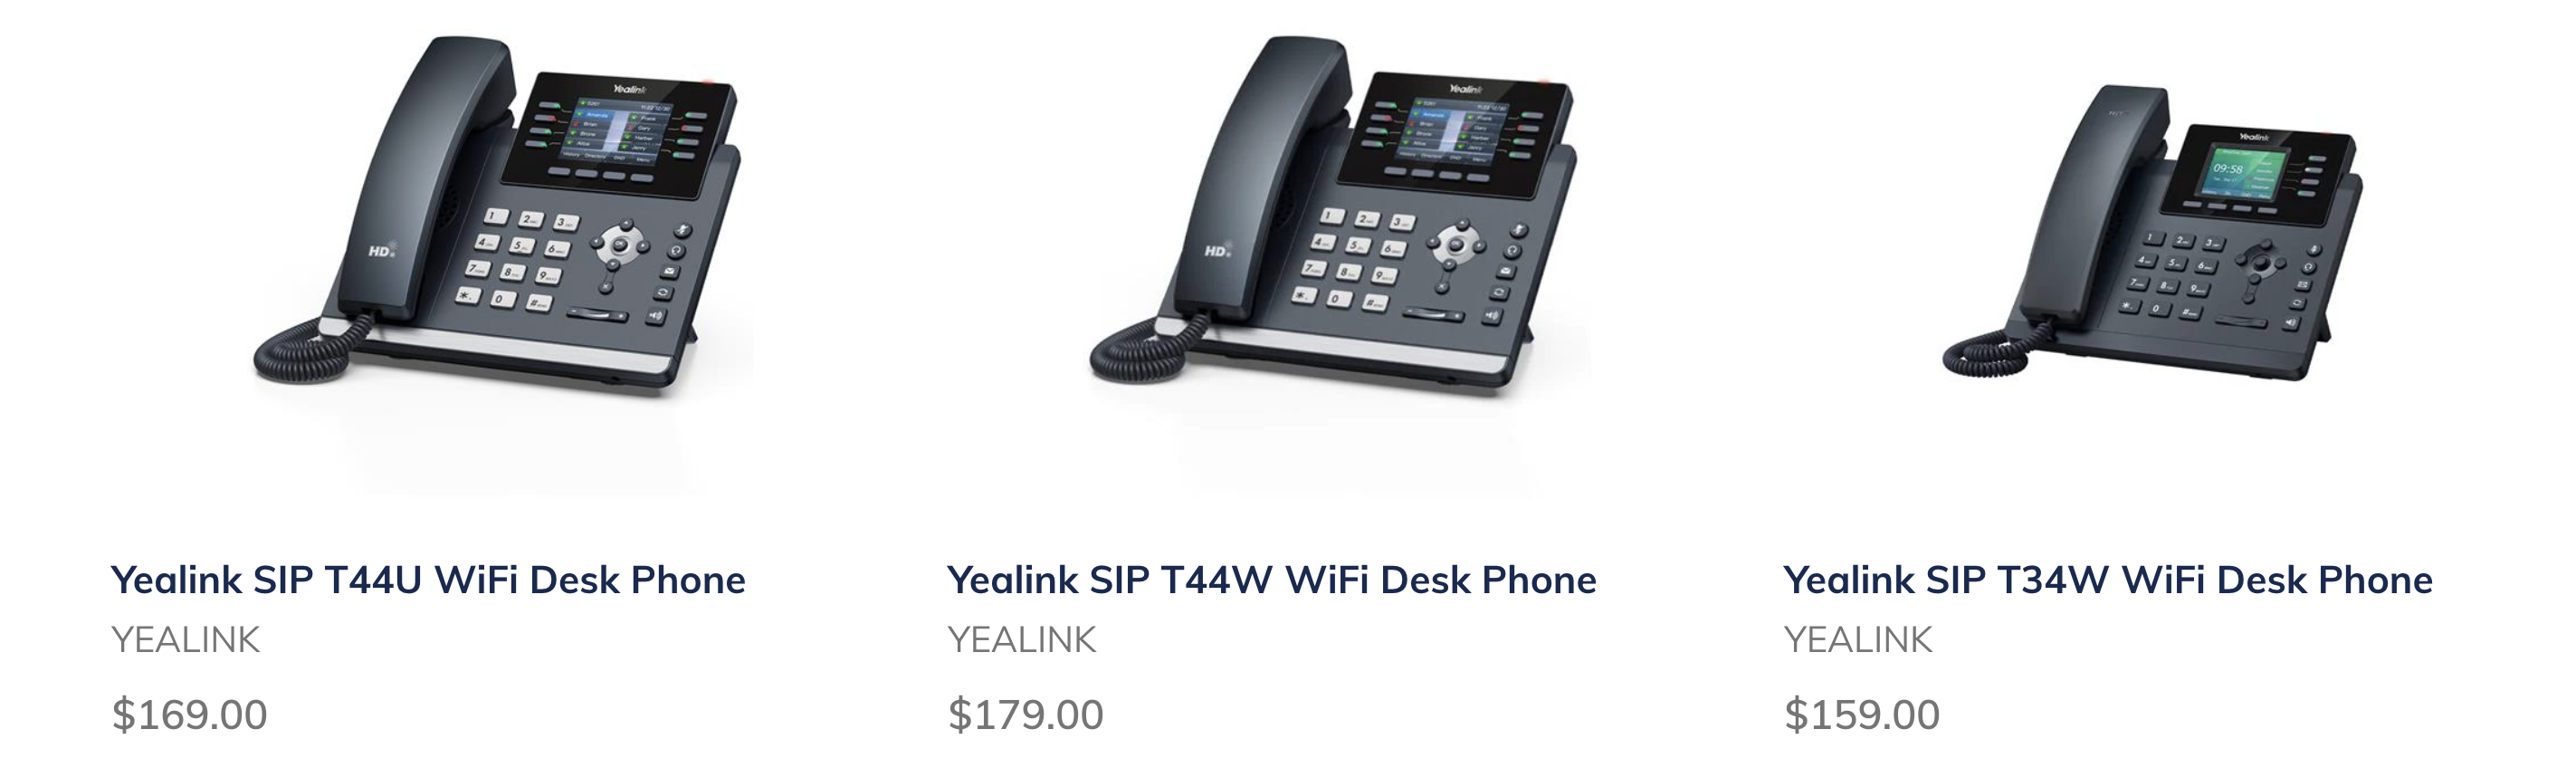 New Yealink WiFi Desk Phones